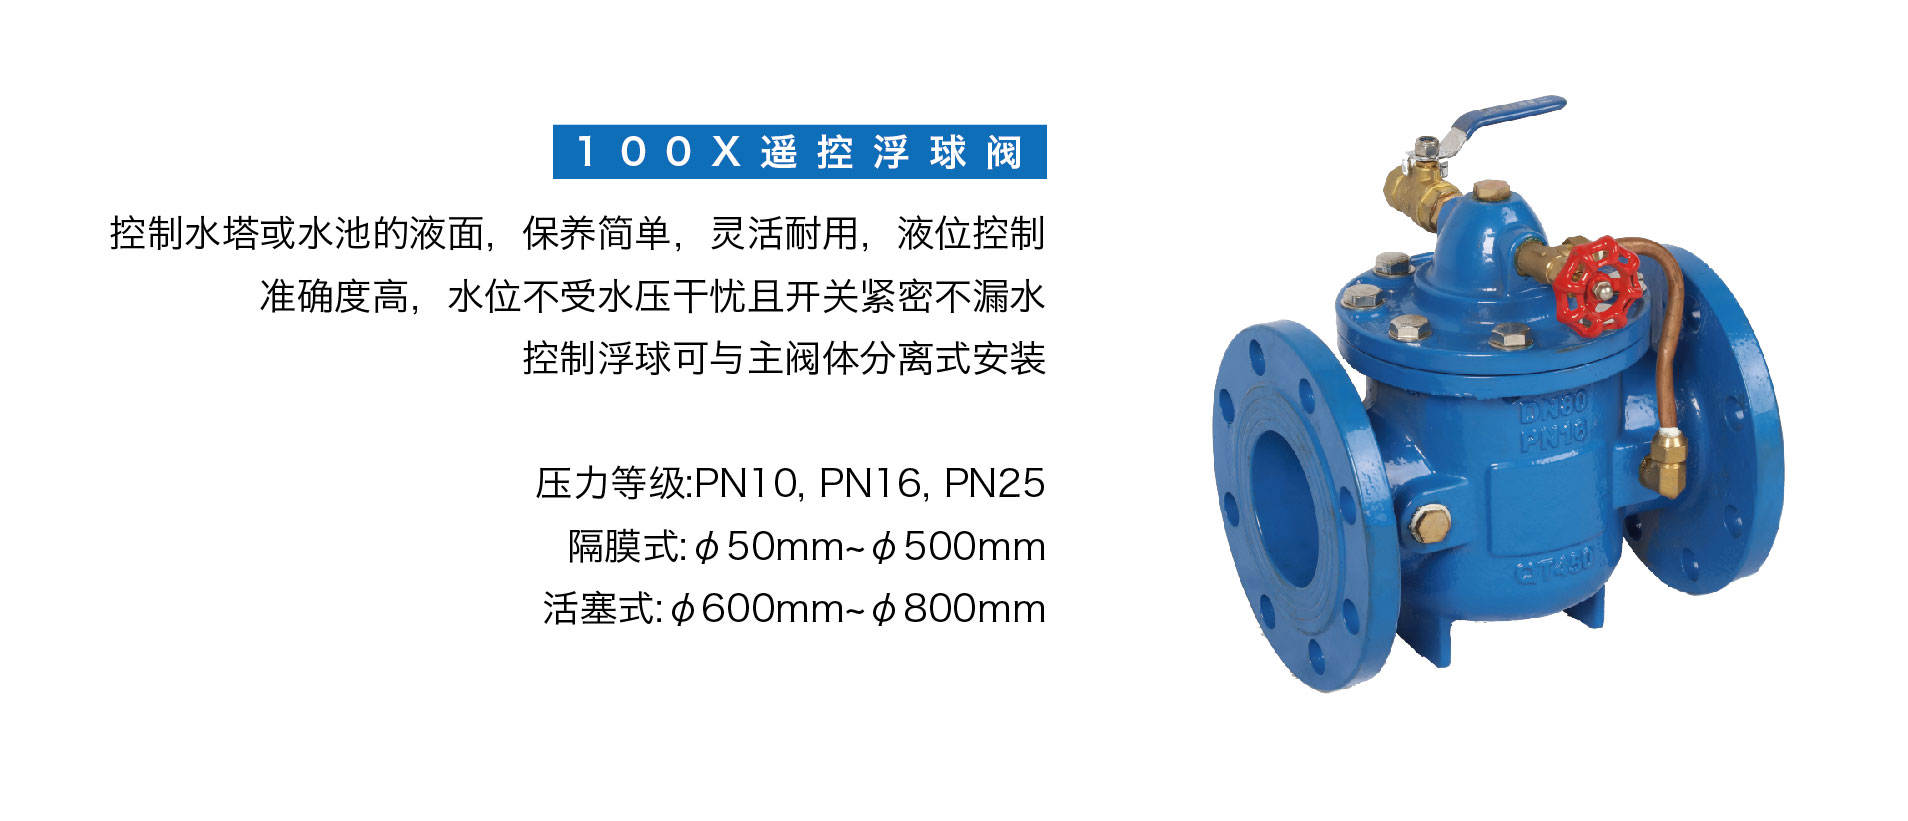 1 0 0 X 遥控浮球阀-控制阀-产品中心-YUDA